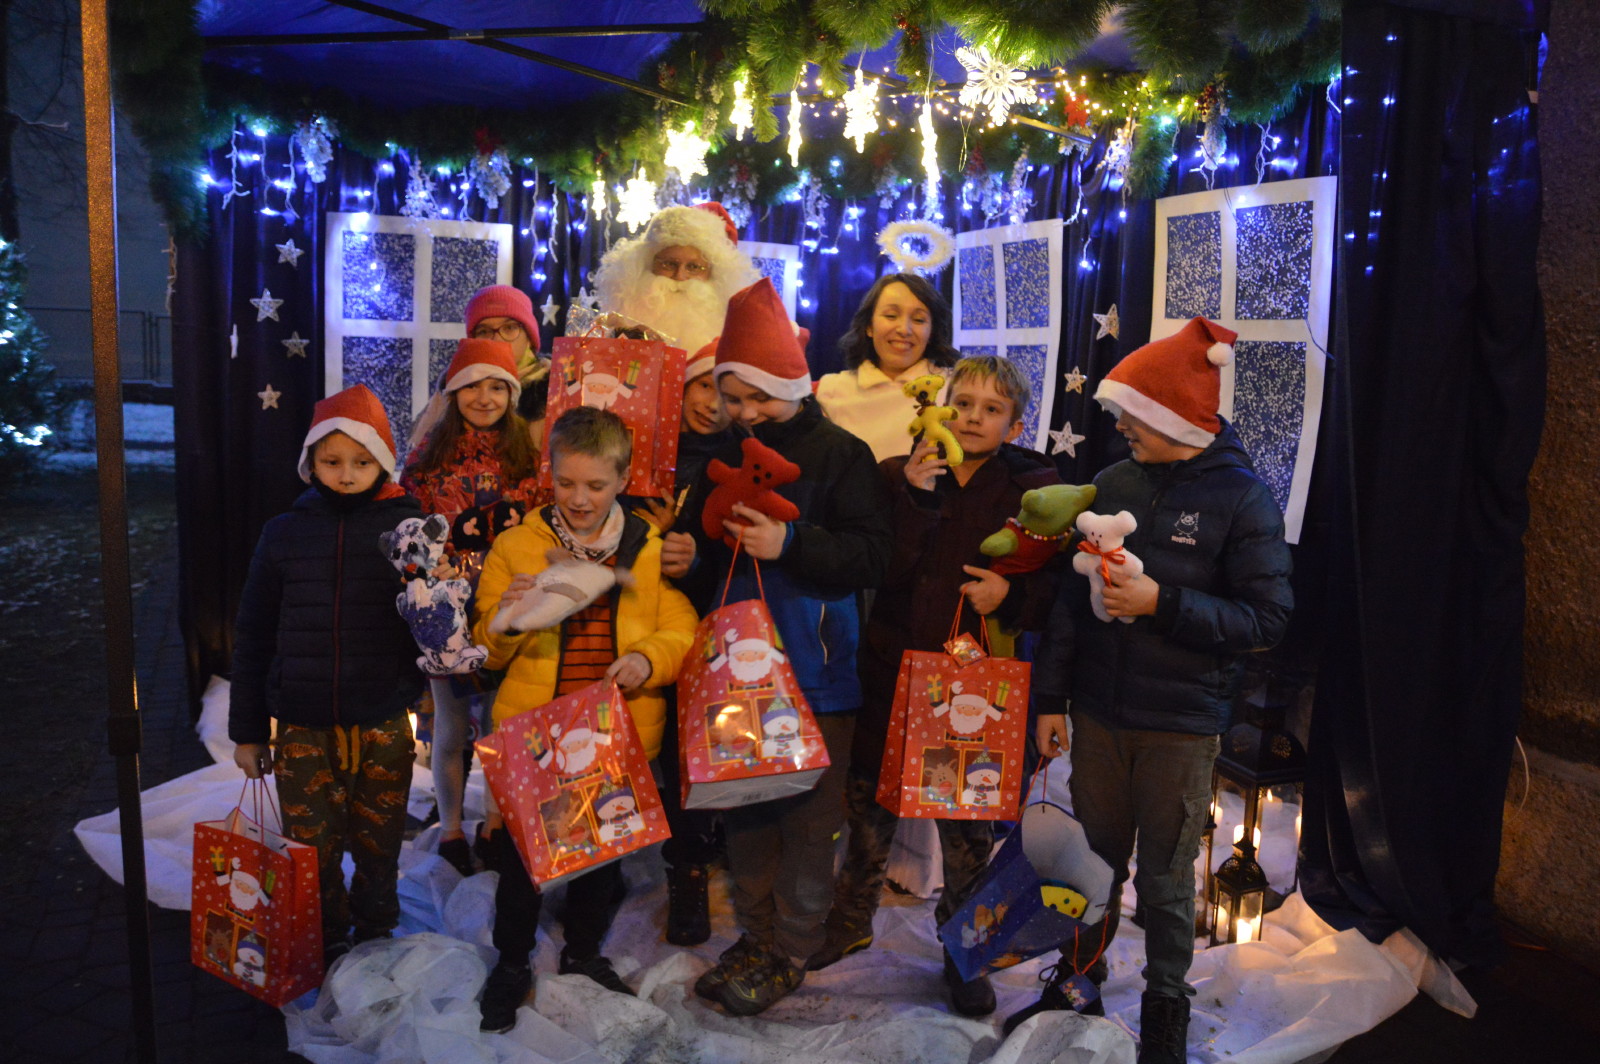 Mikołaj, Śnieżynka i grupa dzieci z prezentami